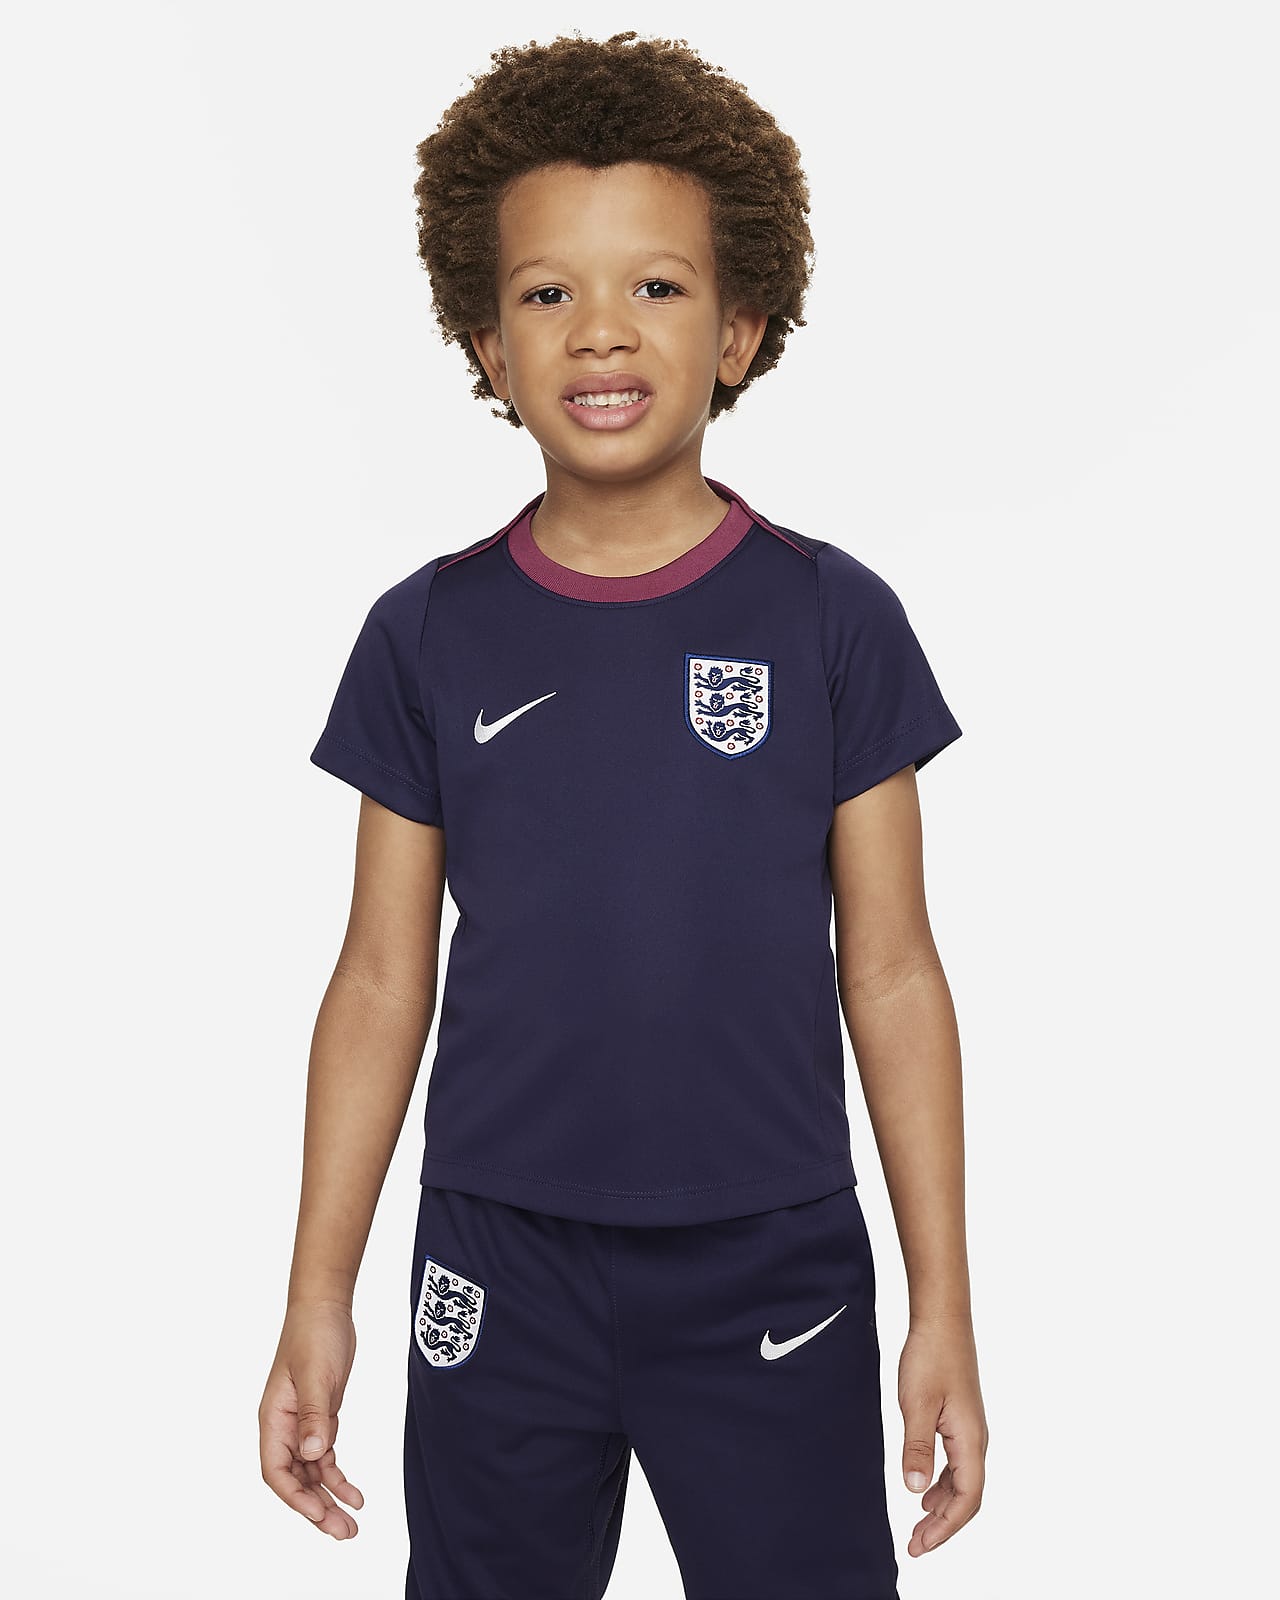 Anglia Academy Pro Nike Dri-FIT rövid ujjú futballfelső gyerekeknek